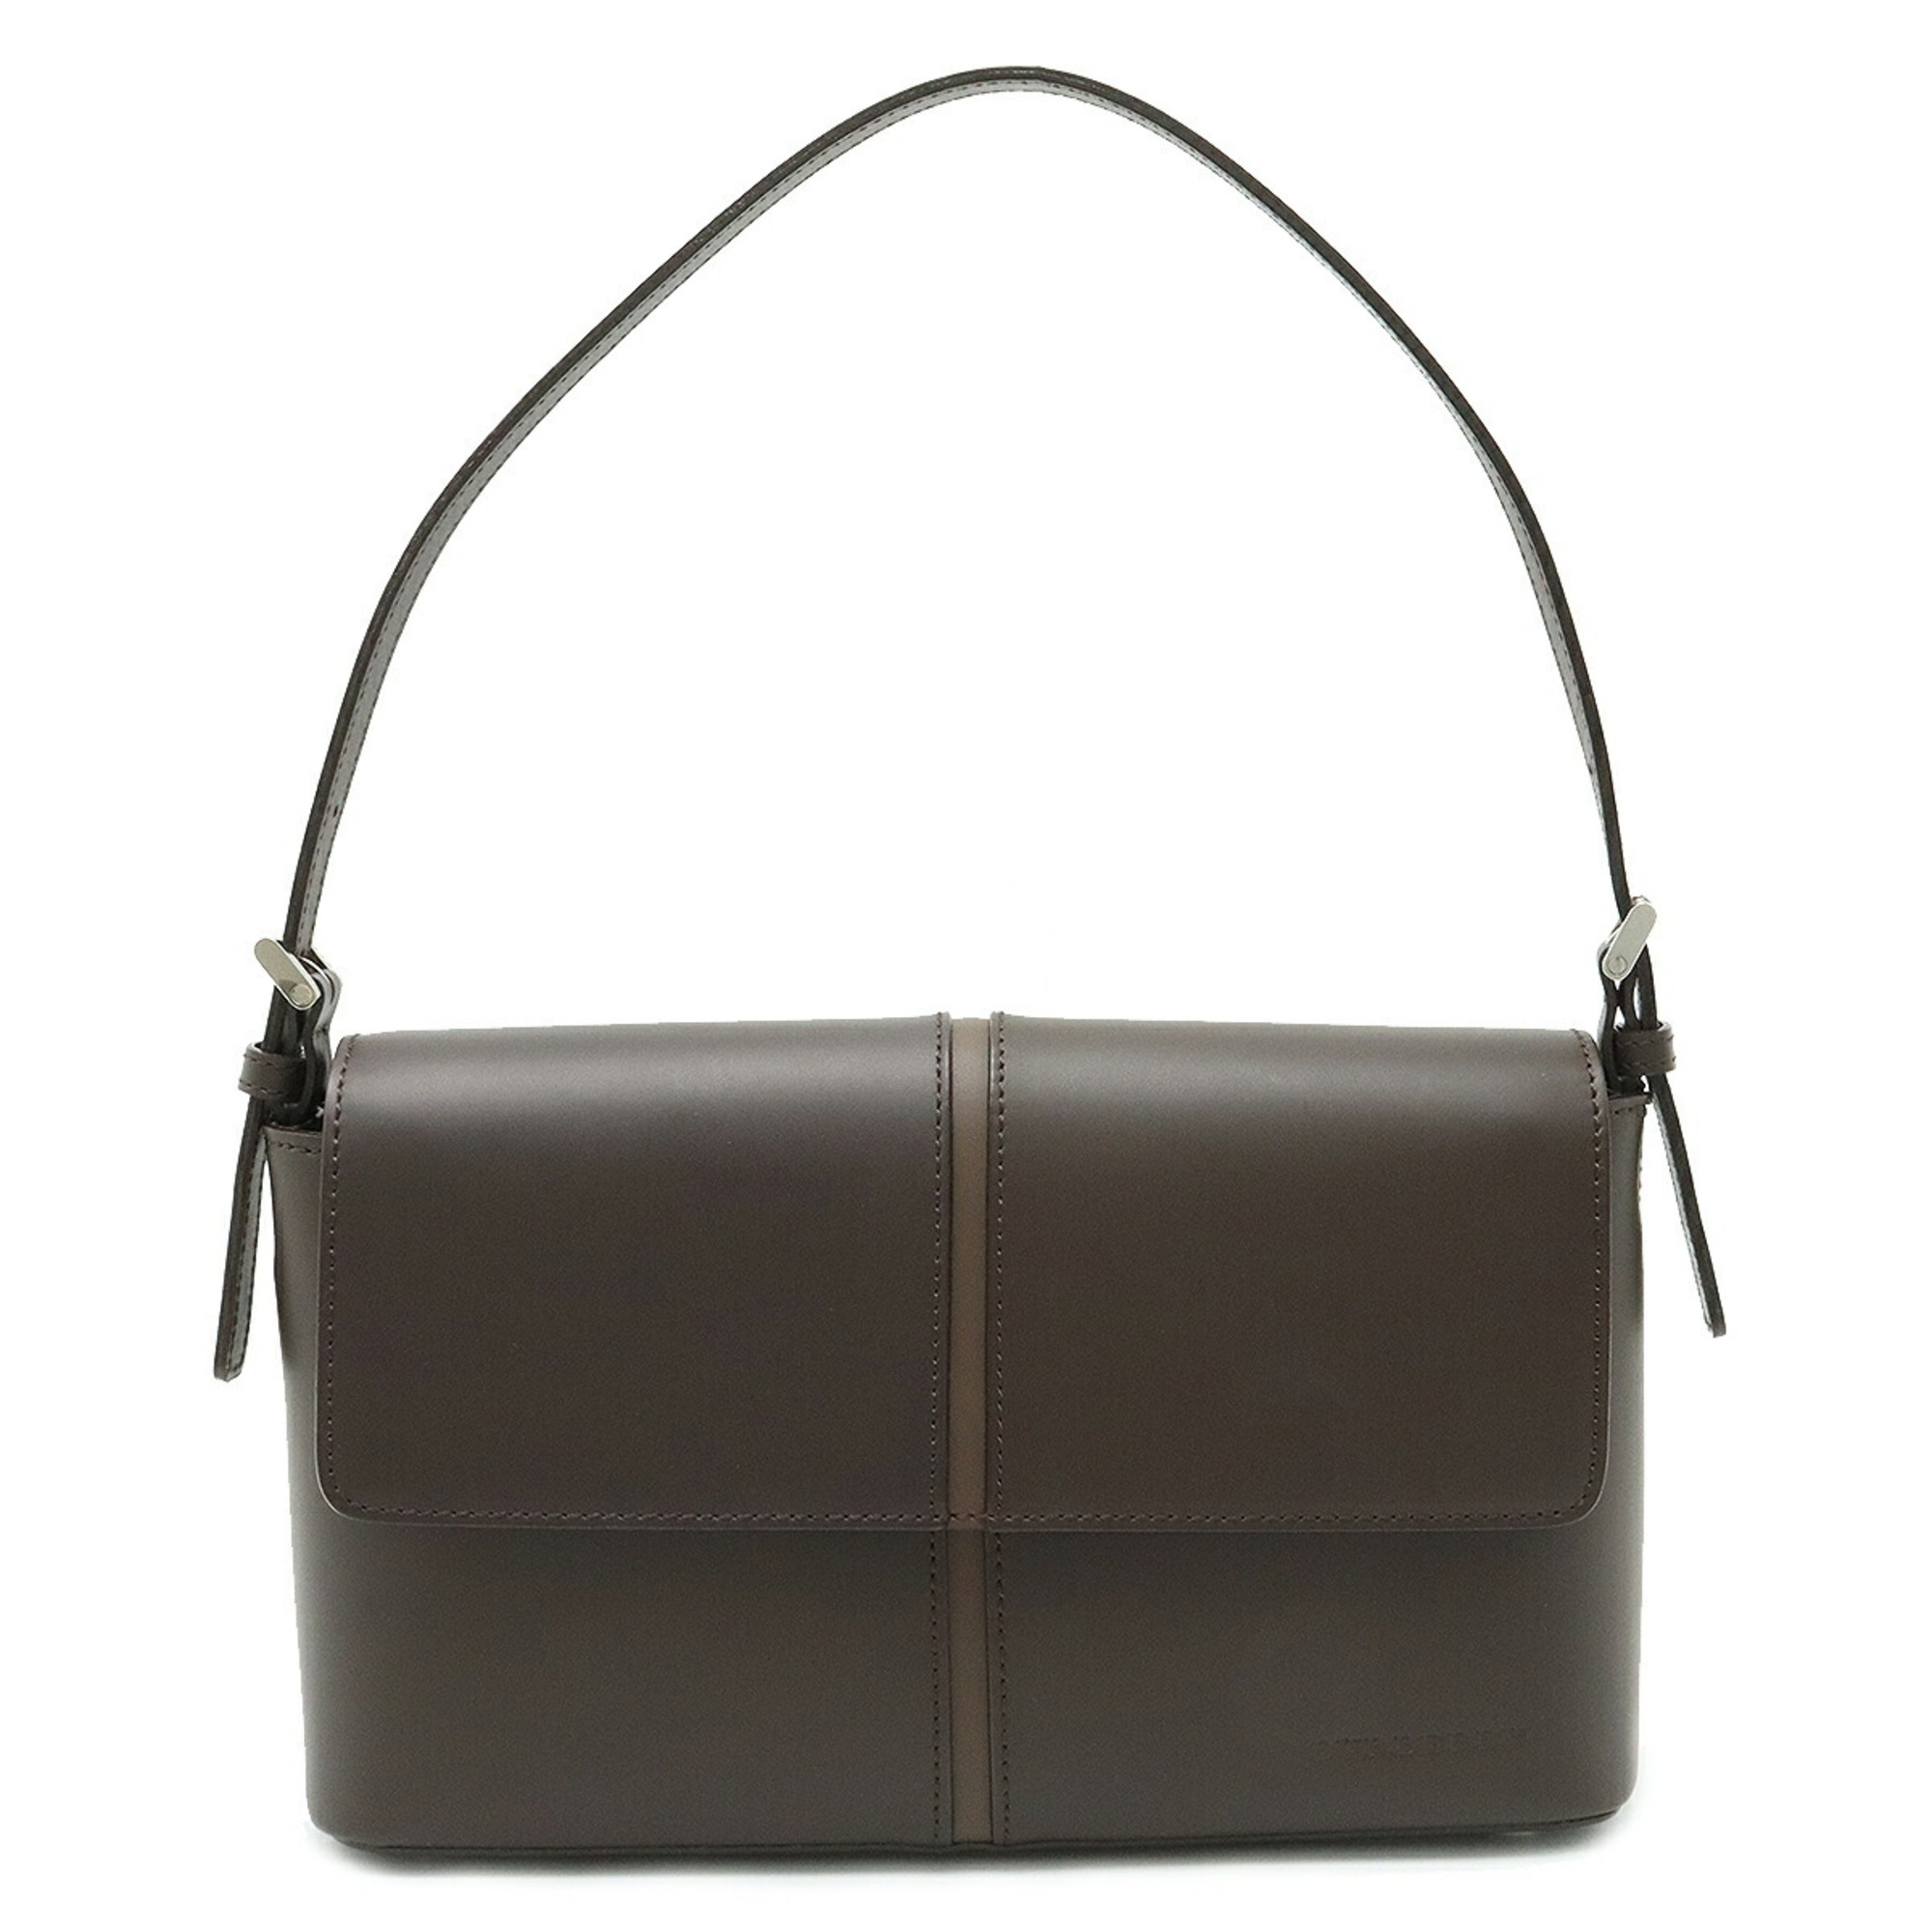 BURBERRY shoulder bag handbag leather dark brown